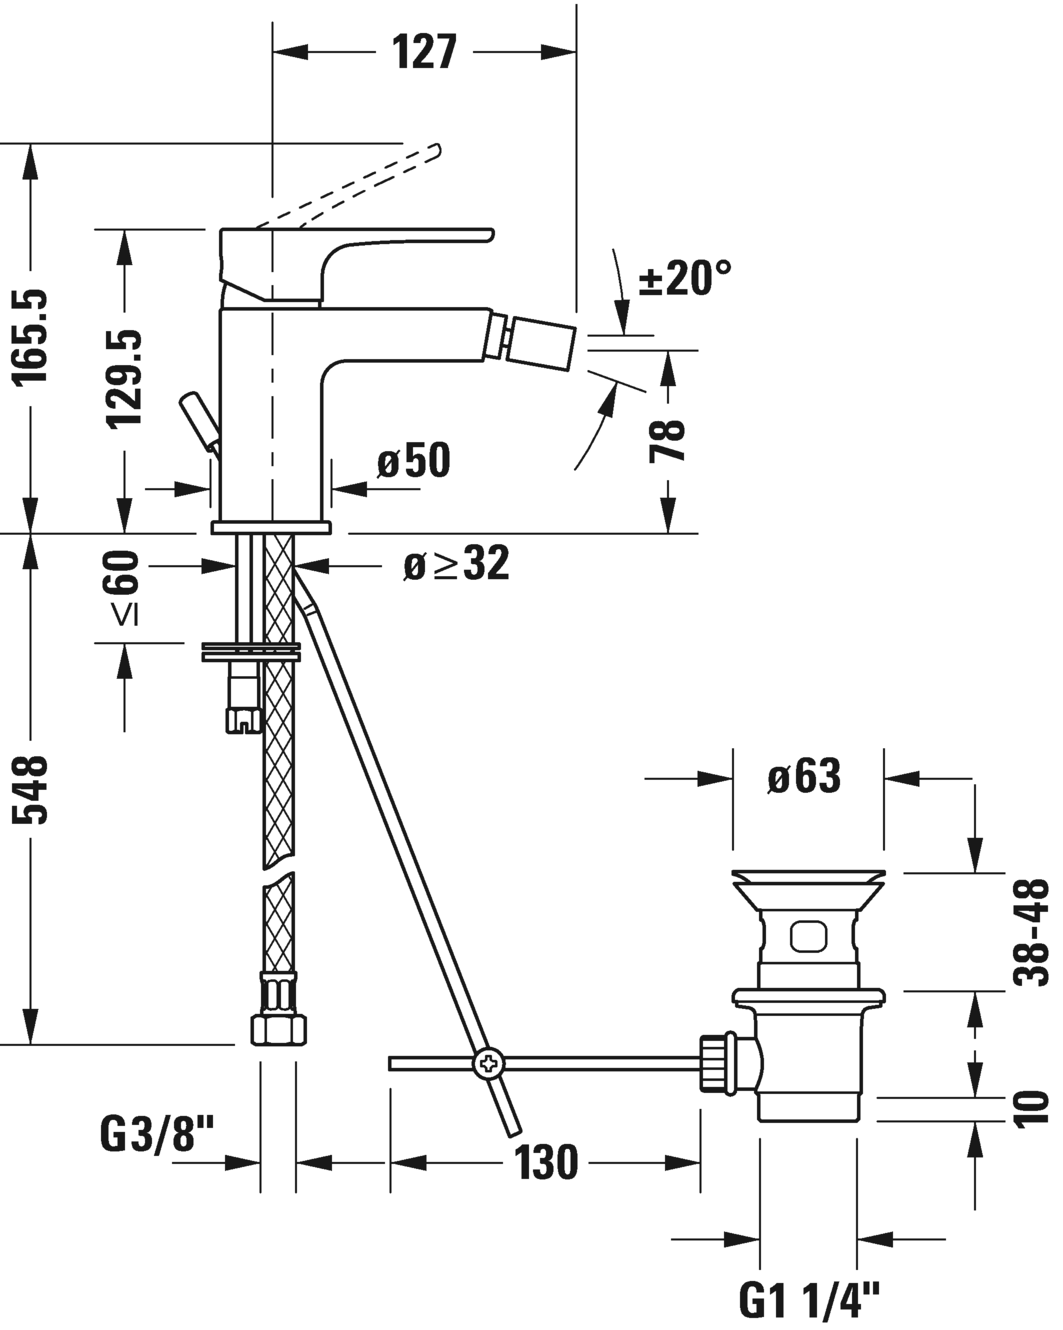 妇洗器龙头, b12400001010 流率 5,3 升/分钟 (3 bar), 连接件尺寸